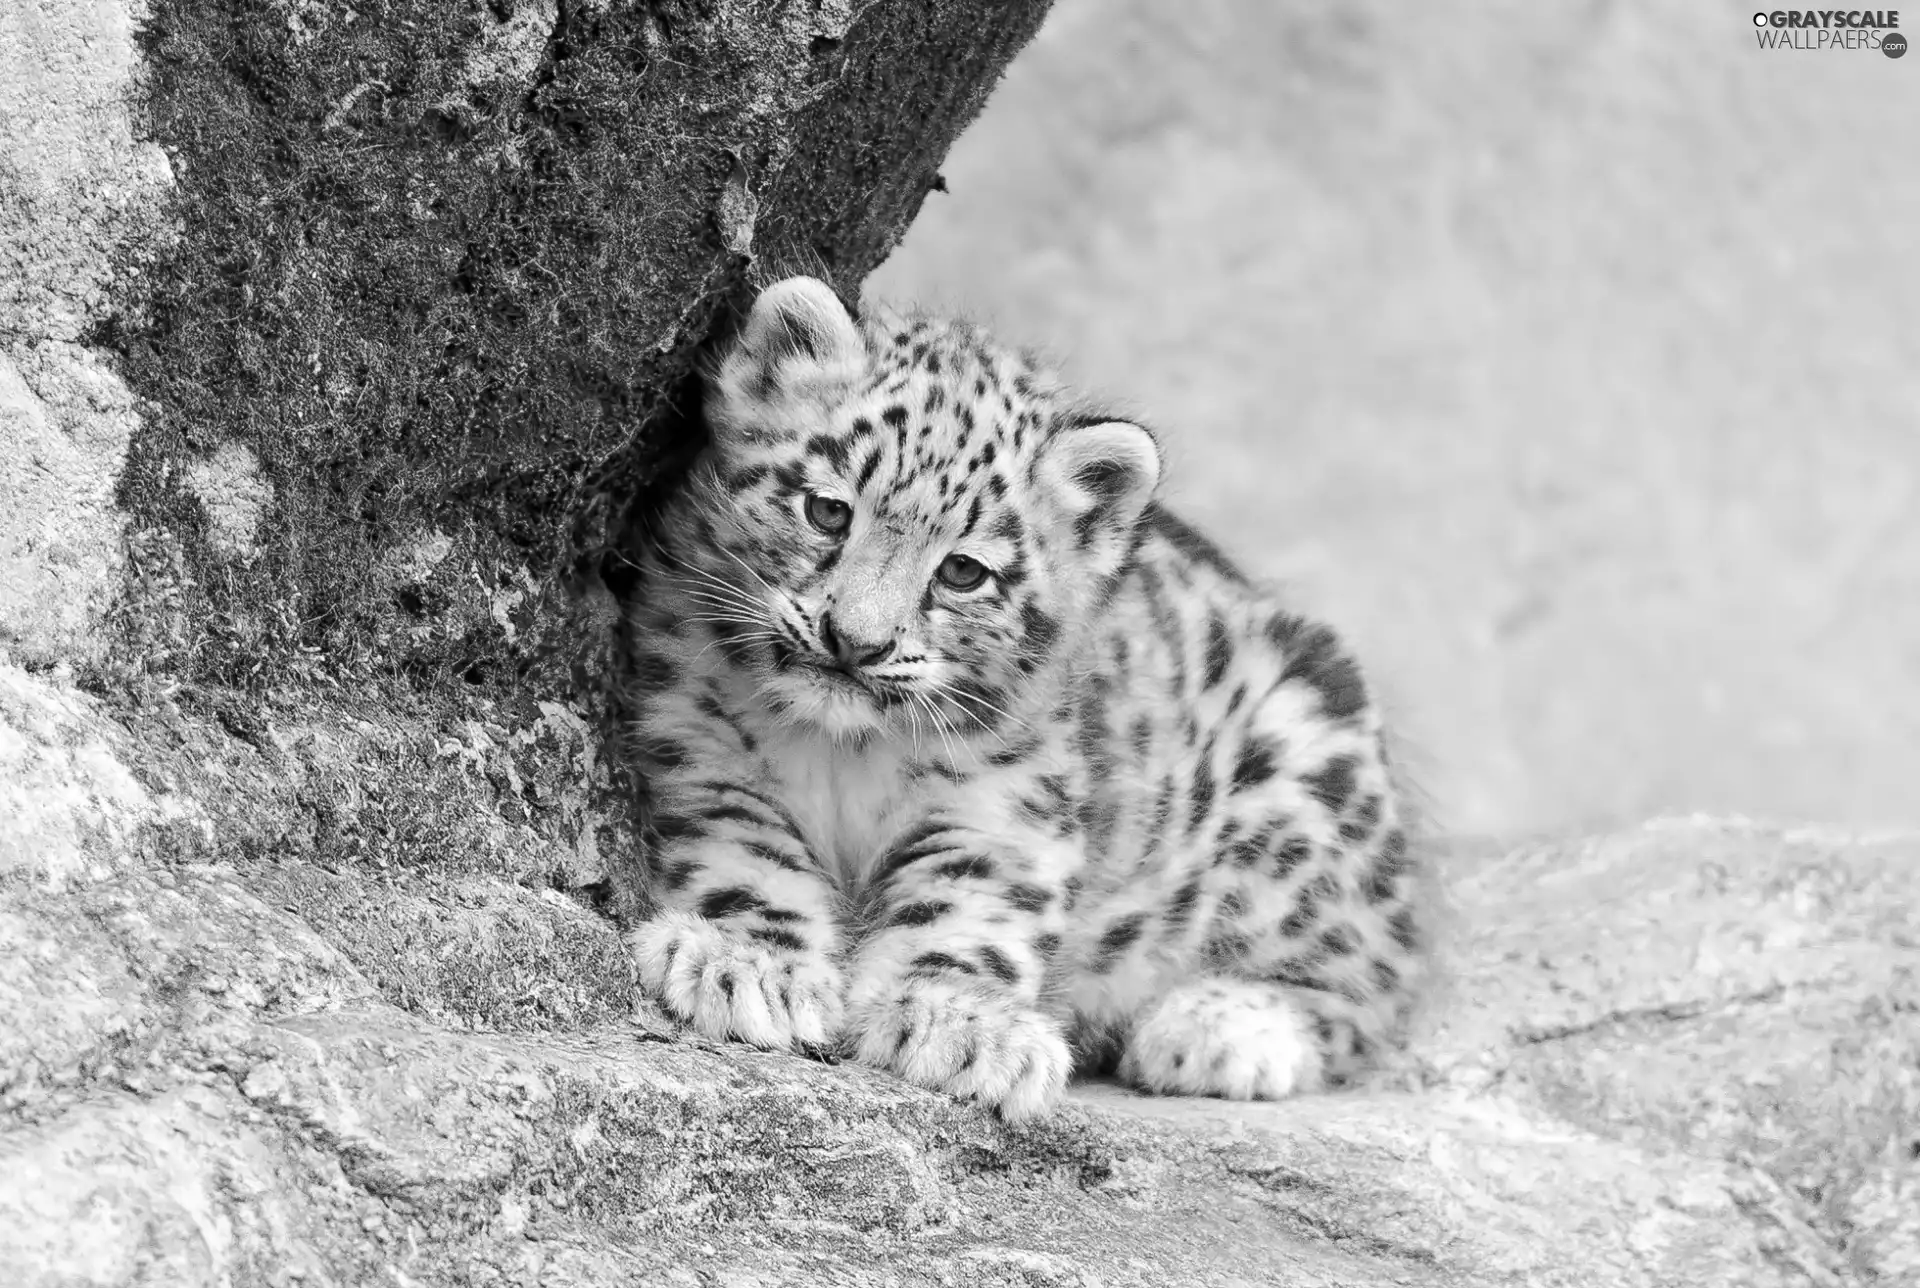 Rocks, Little, snow leopard